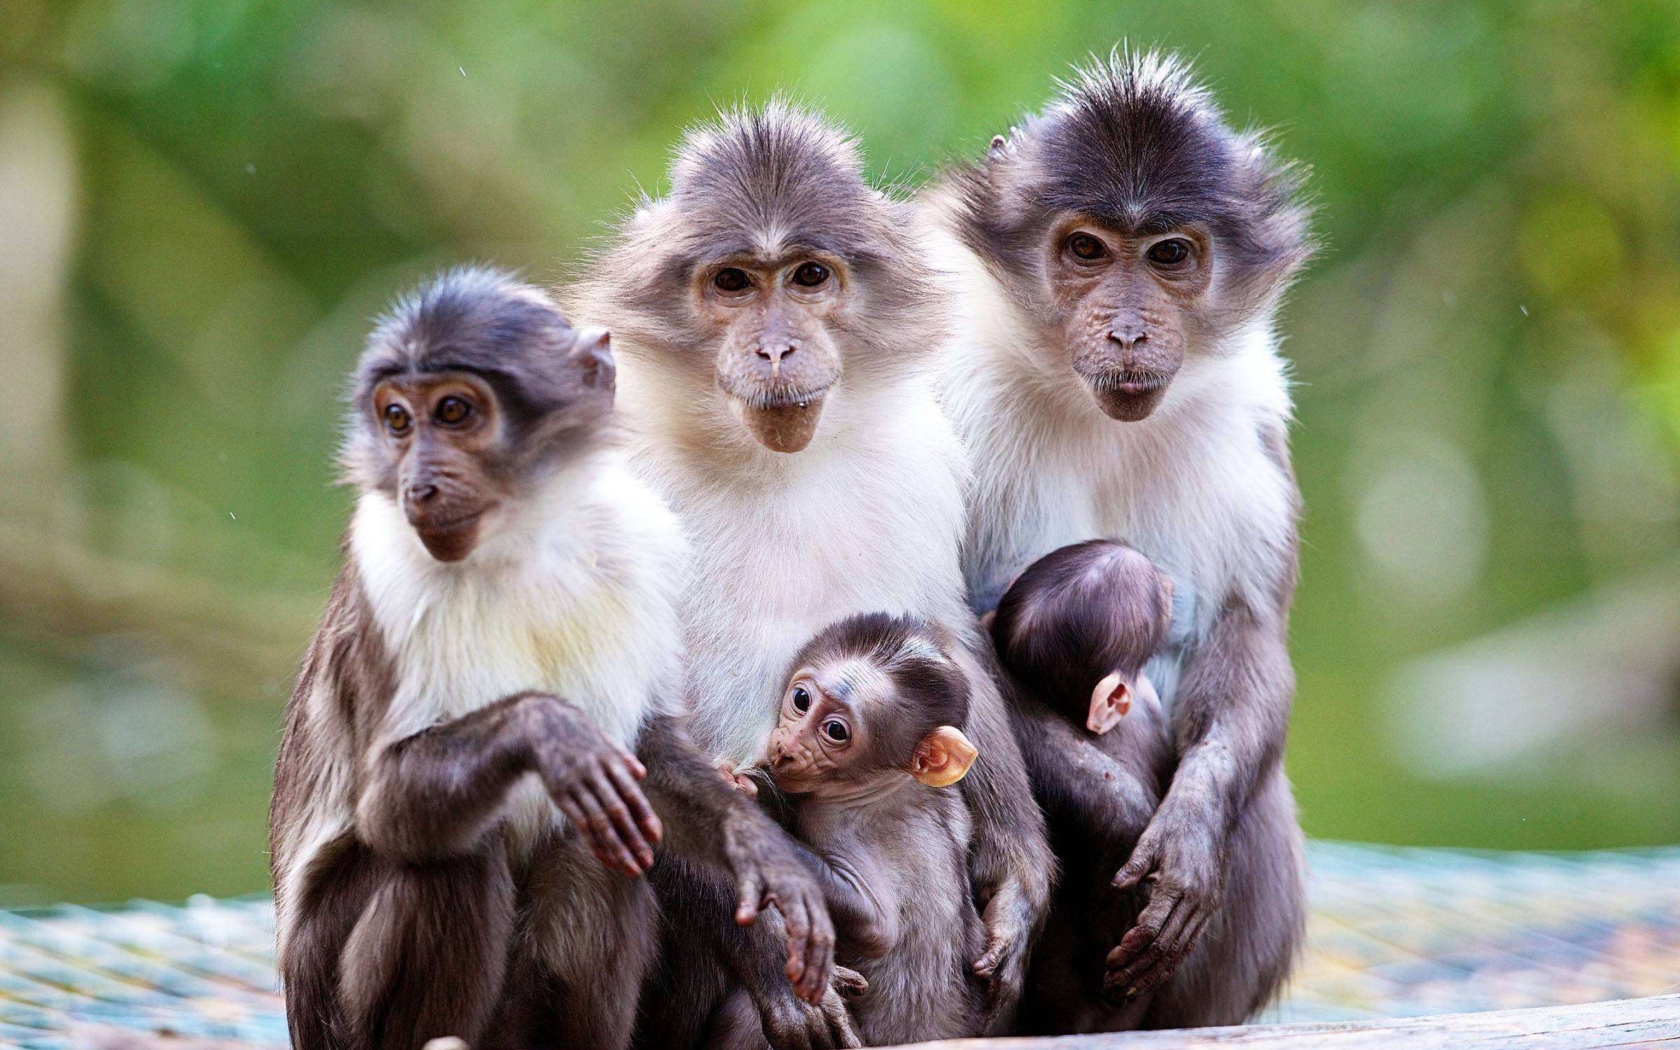 Sfondi Funny Monkeys With Their Babies 1680x1050